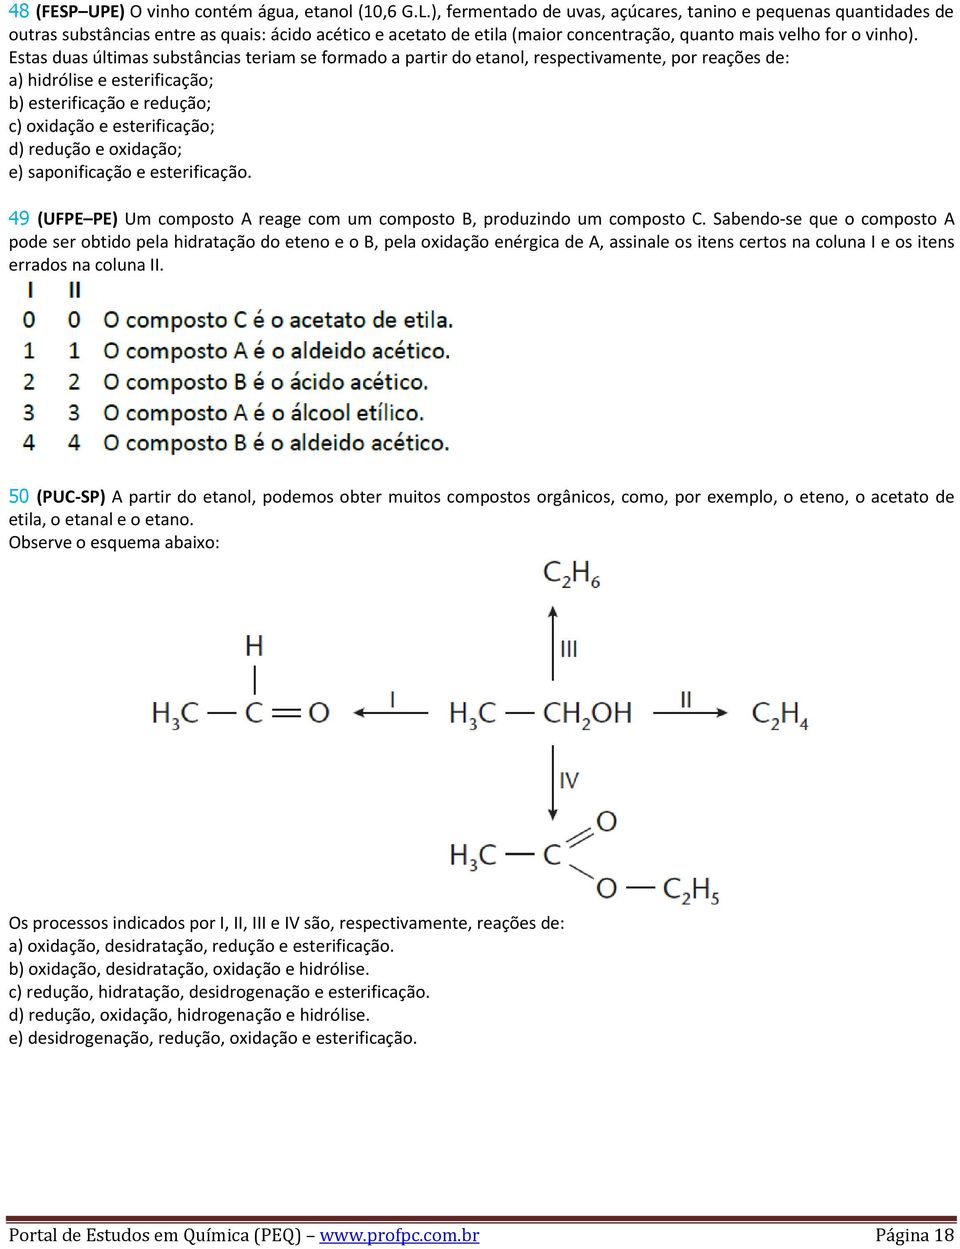 Estas duas últimas substâncias teriam se formado a partir do etanol, respectivamente, por reações de: a) hidrólise e esterificação; b) esterificação e redução; c) oxidação e esterificação; d) redução